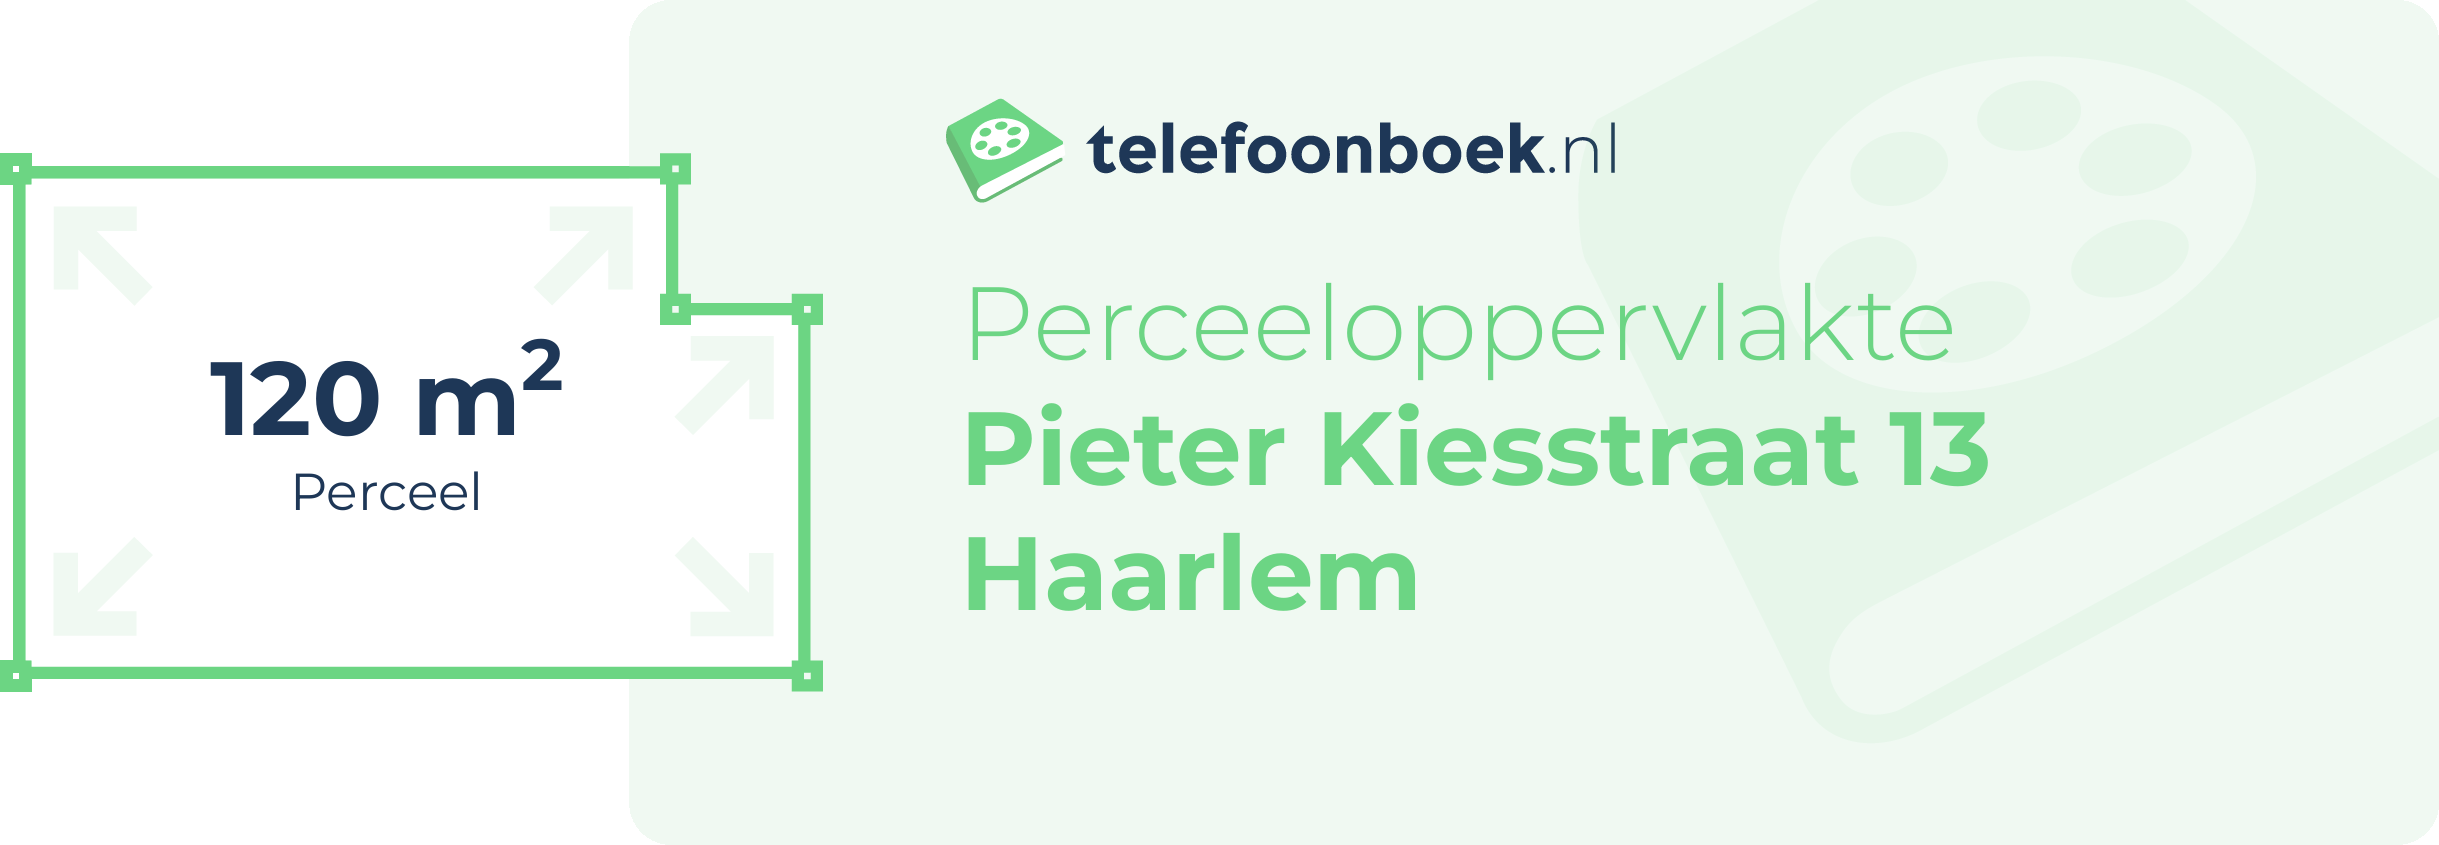 Perceeloppervlakte Pieter Kiesstraat 13 Haarlem